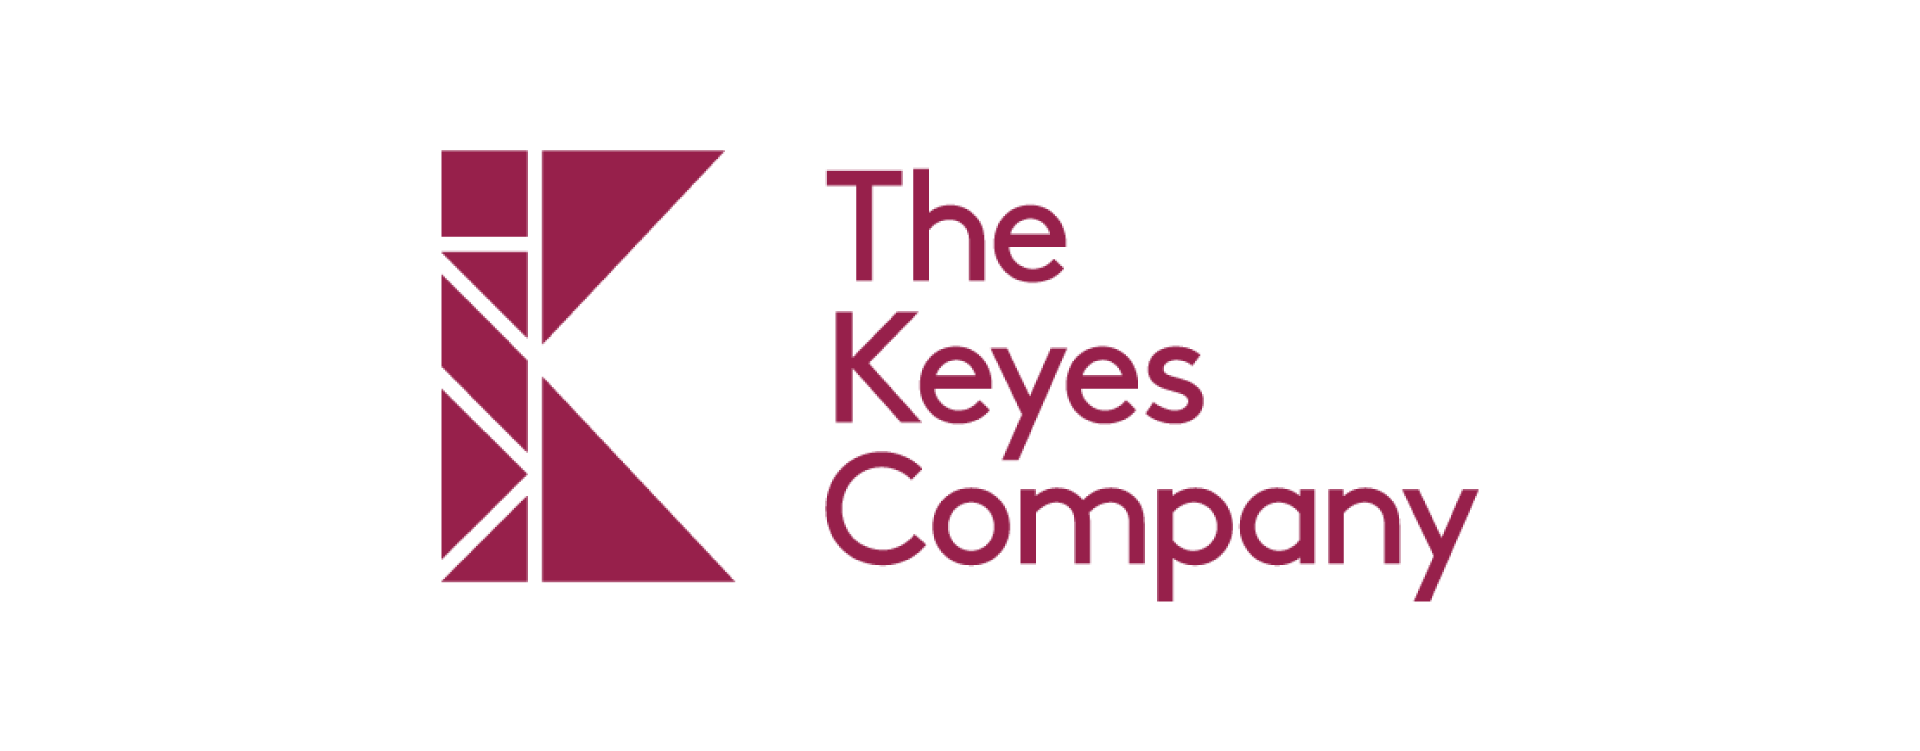 the keyes company logo